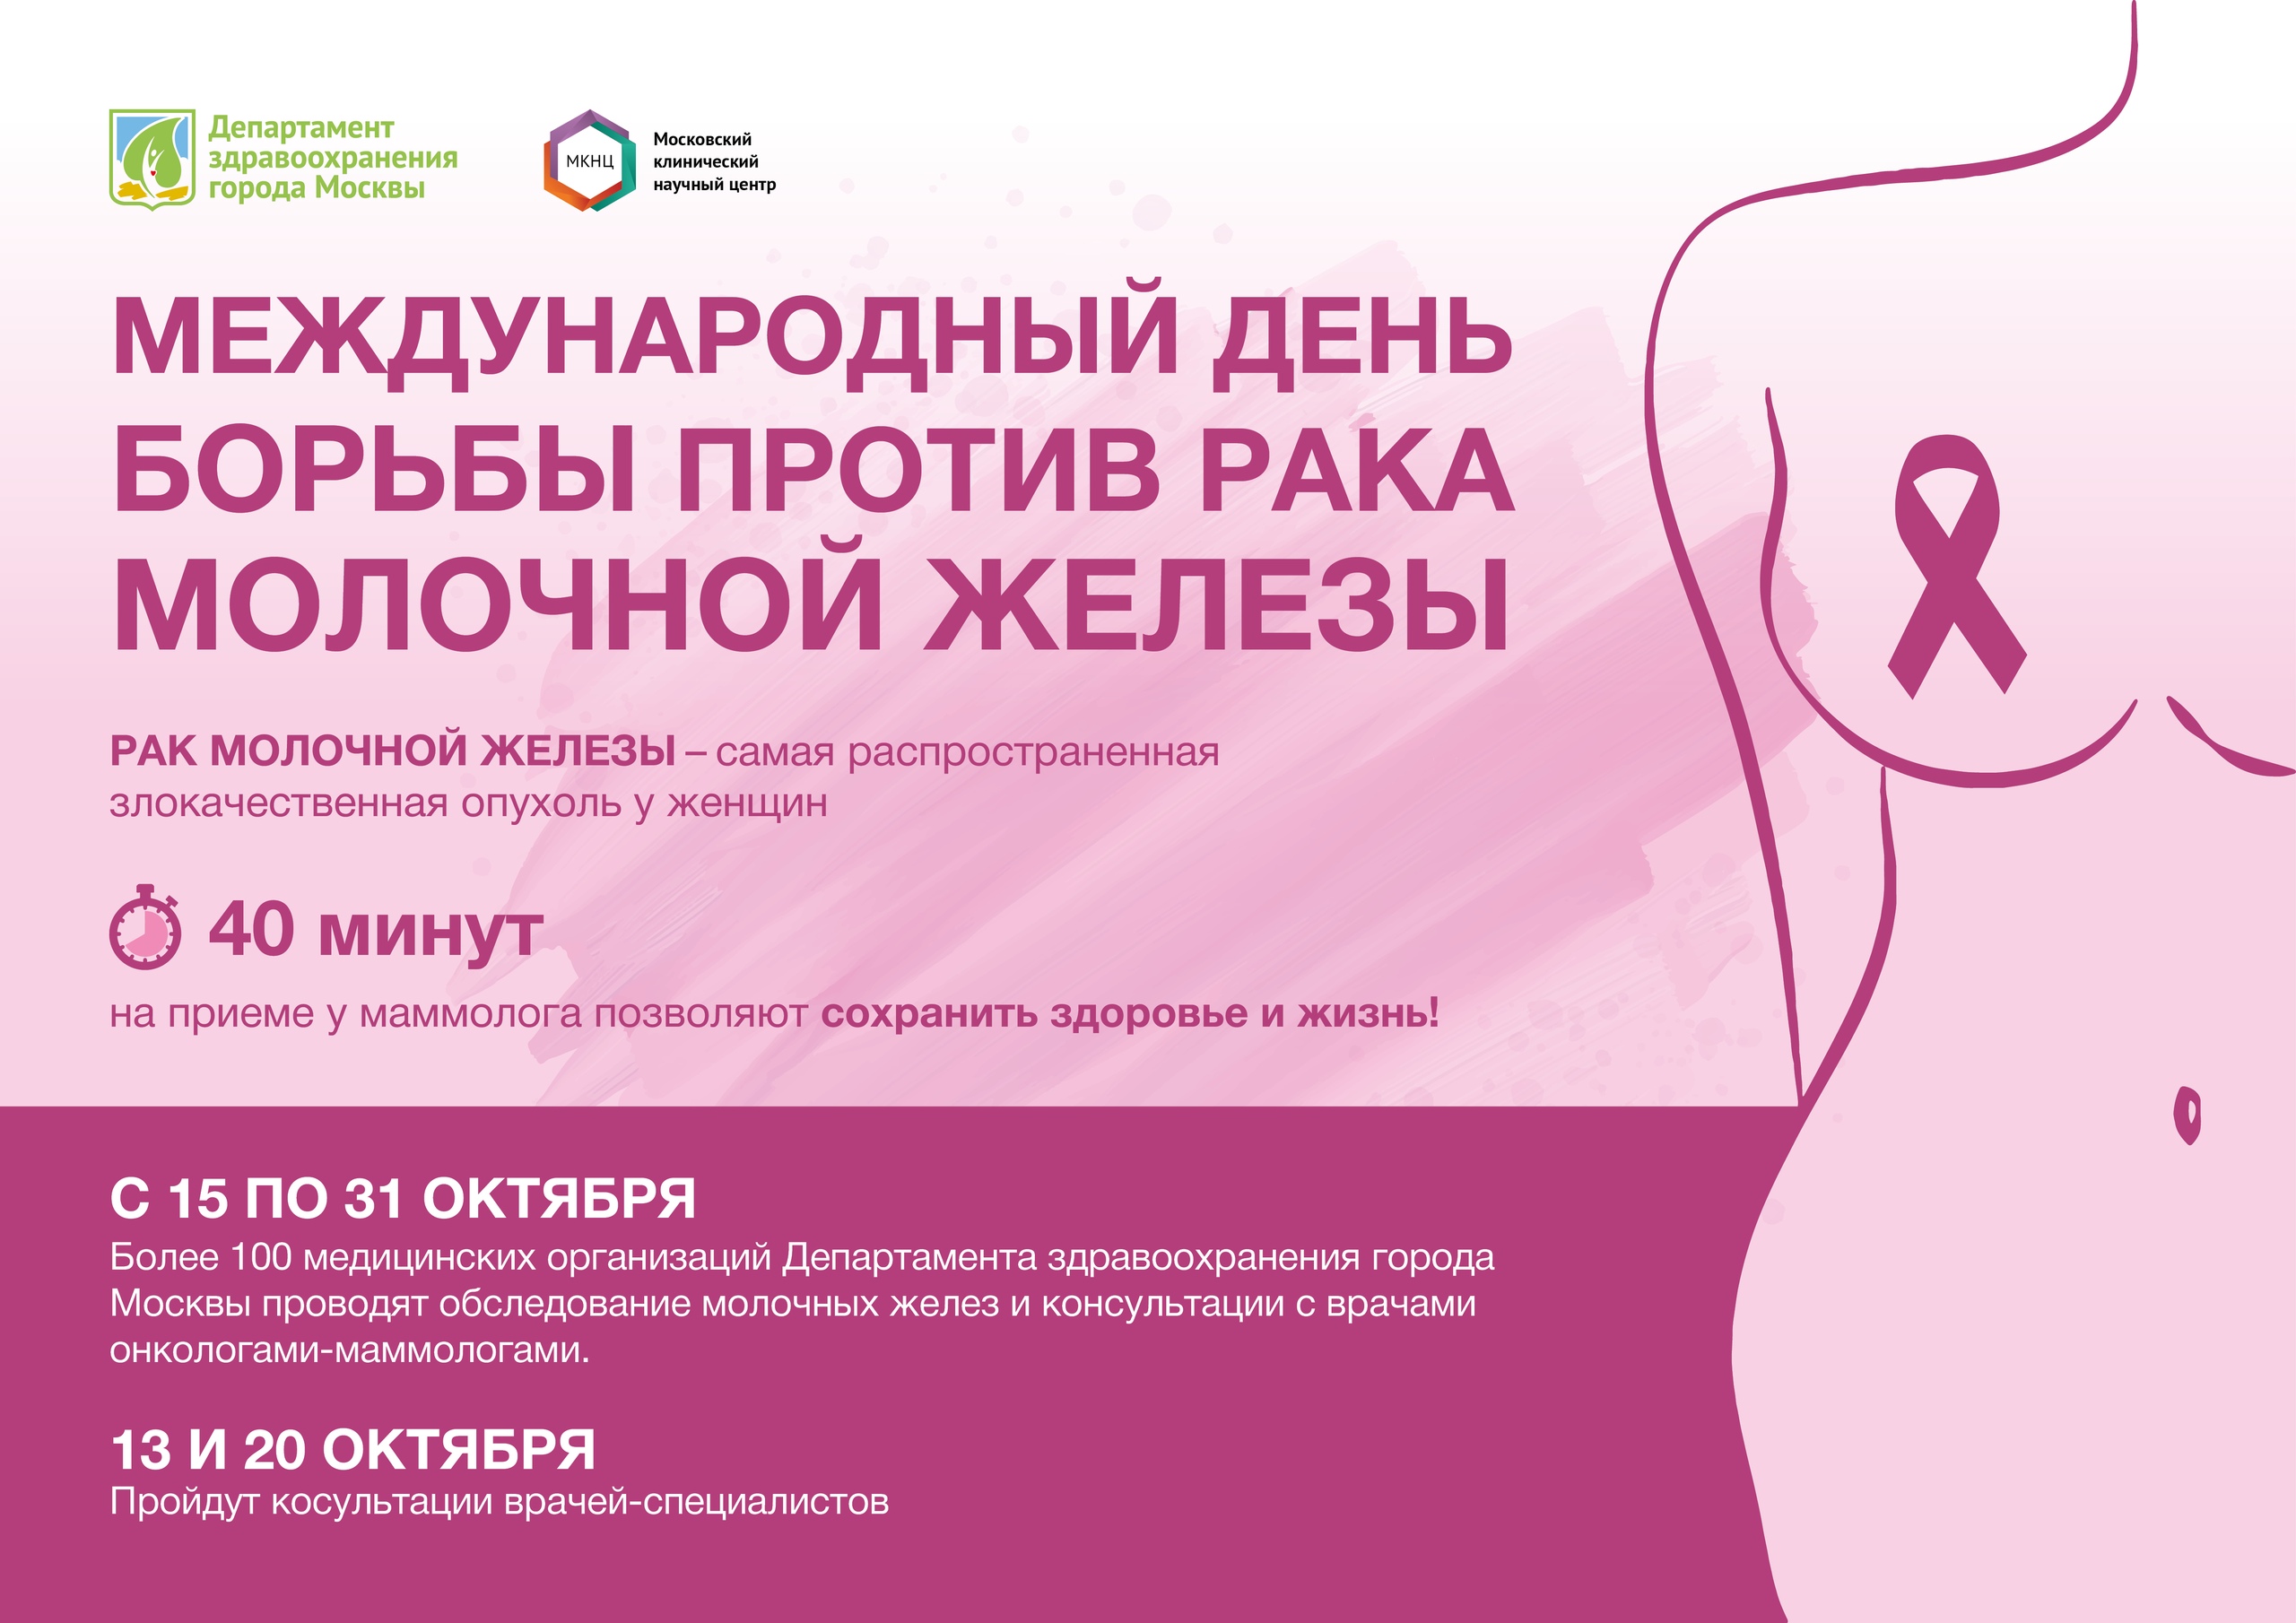 Рак молочной железы лечение dalshefond. Профилактика молочных желез. Онкология маммология. Опухоли молочной железы диспансеризация. Профилактика молочной железы у женщин.